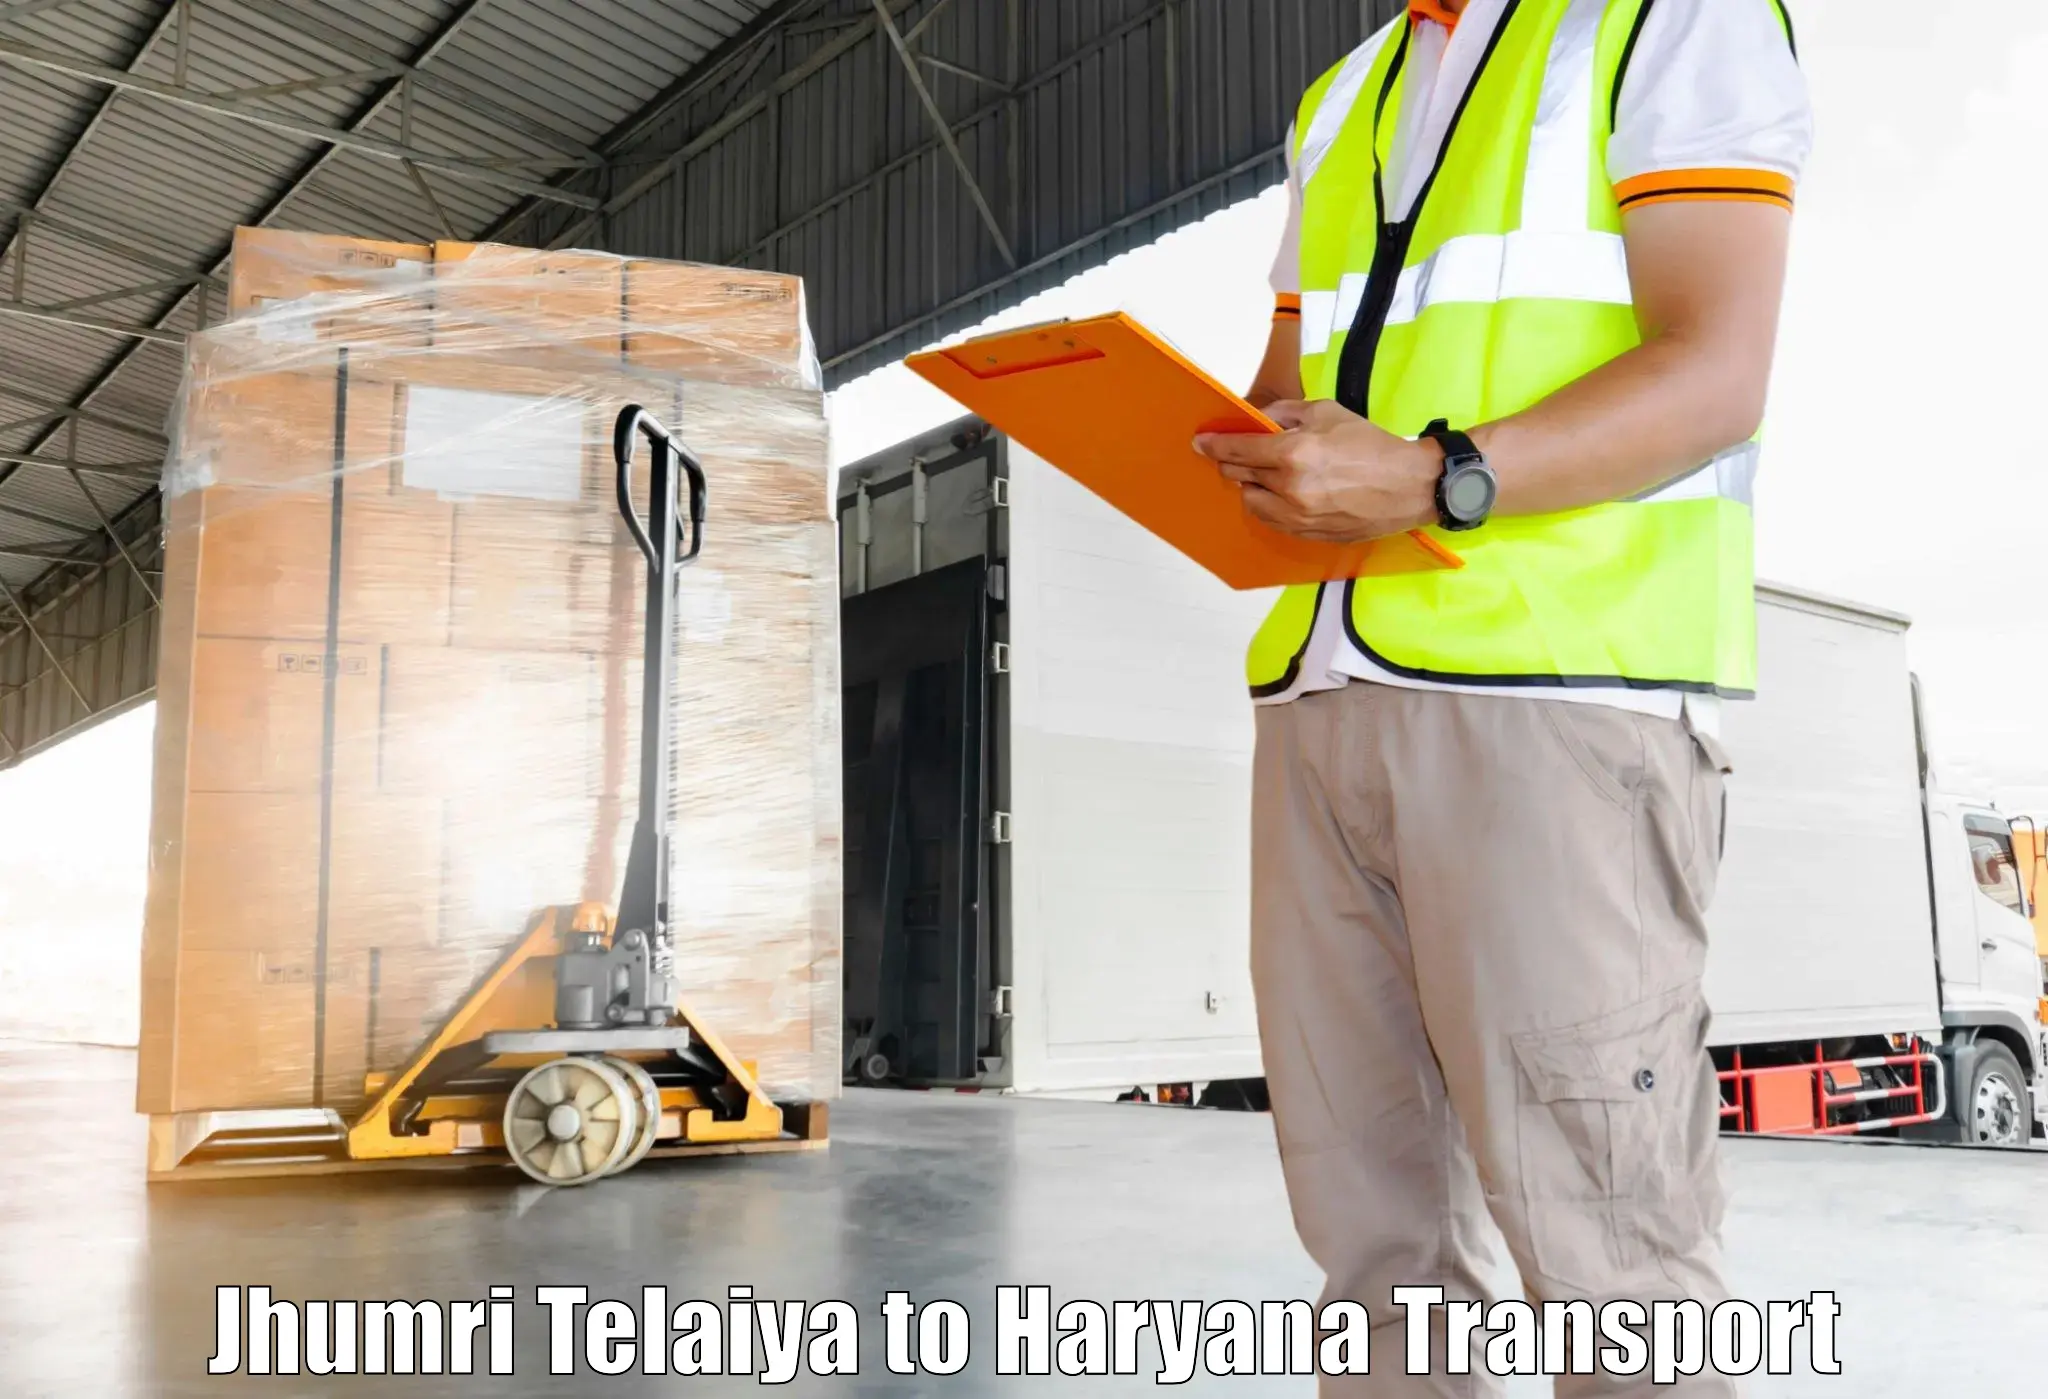 Container transportation services Jhumri Telaiya to Panchkula